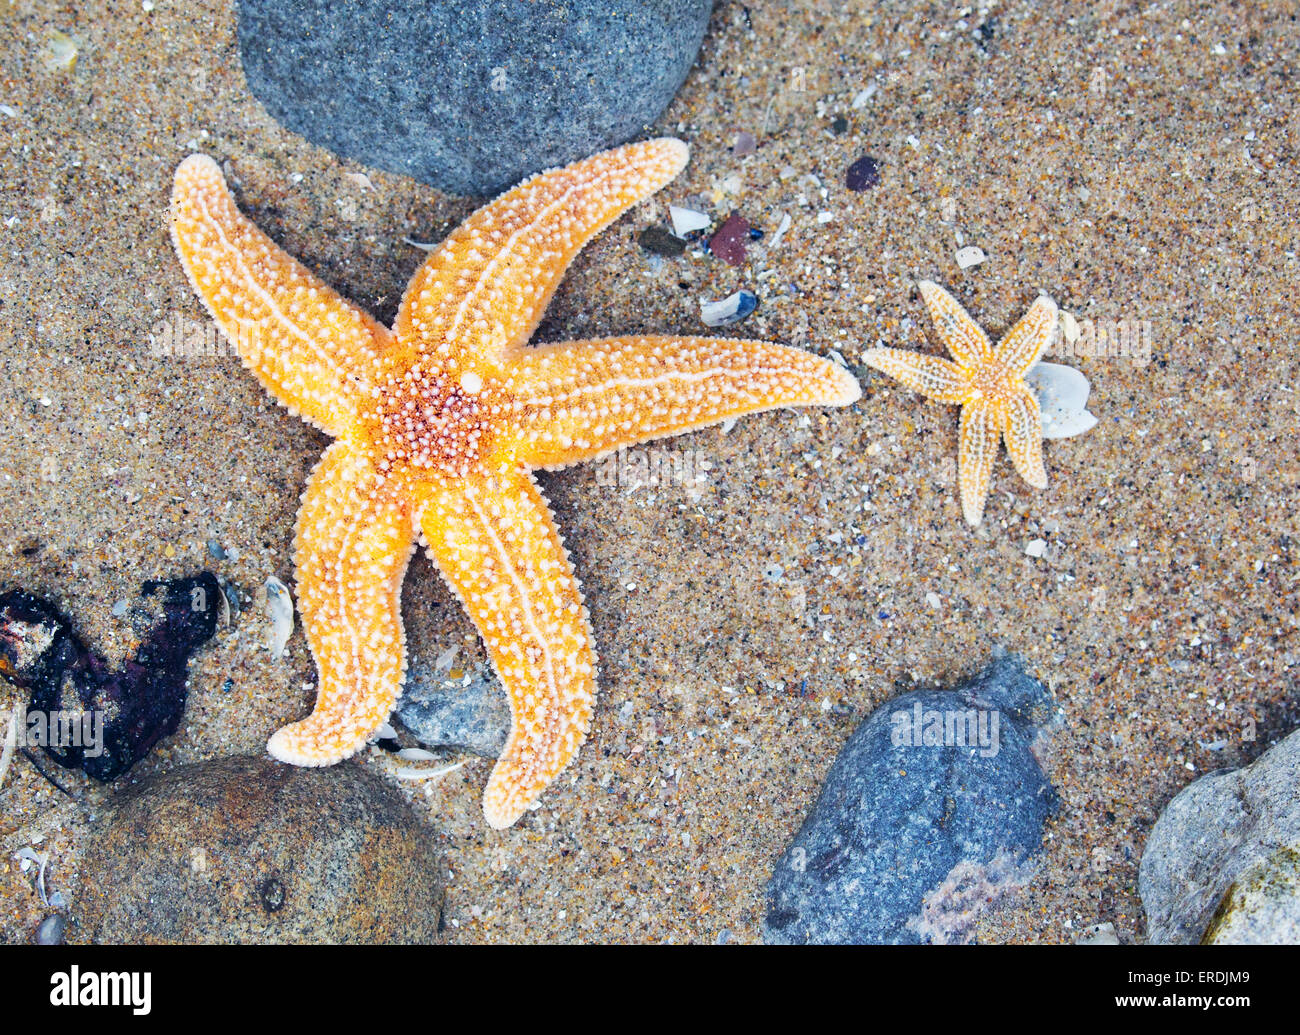 L'Étoile de mer commune Asterias rubens et les jeunes adultes de plus petite taille dans une roche piscine sur la péninsule de Gower, dans le sud du Pays de Galles UK Banque D'Images